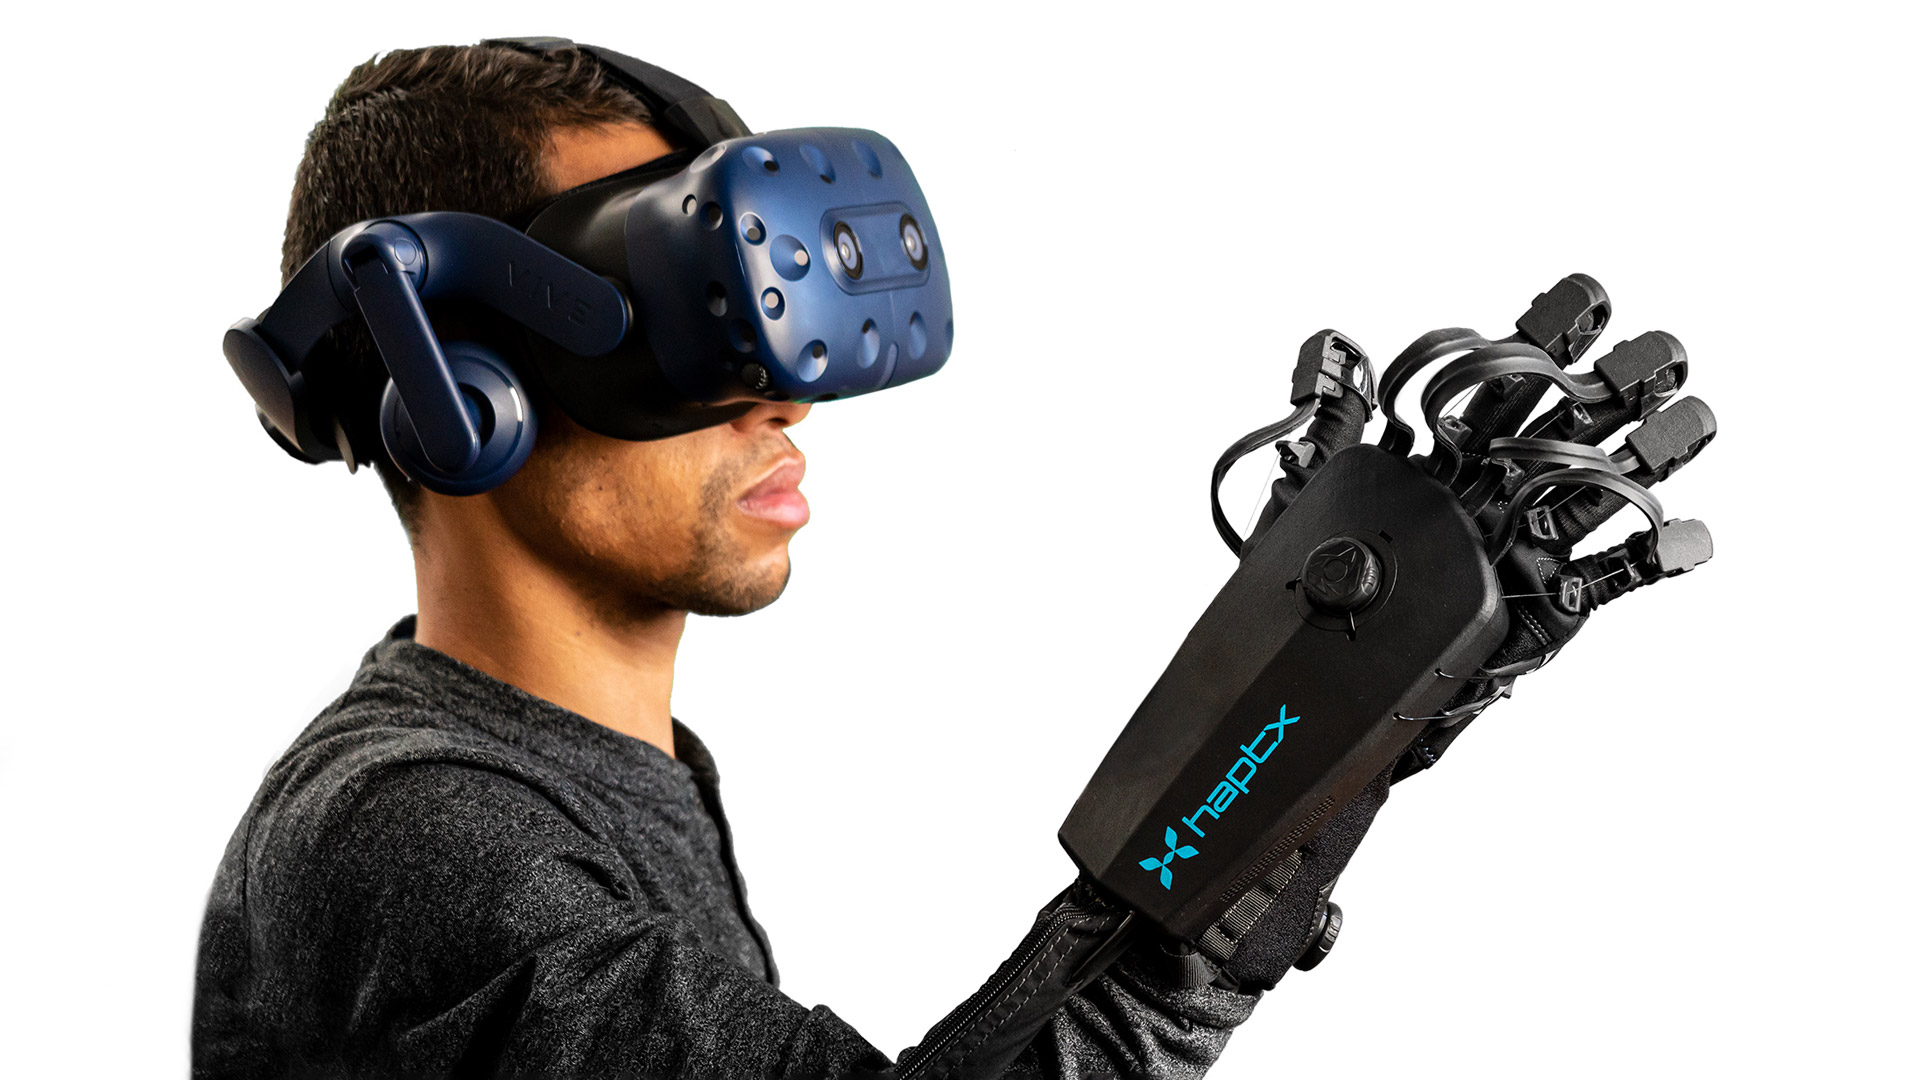 HaptX New & Improved DK2 Haptic VR Gloves for Enterprise